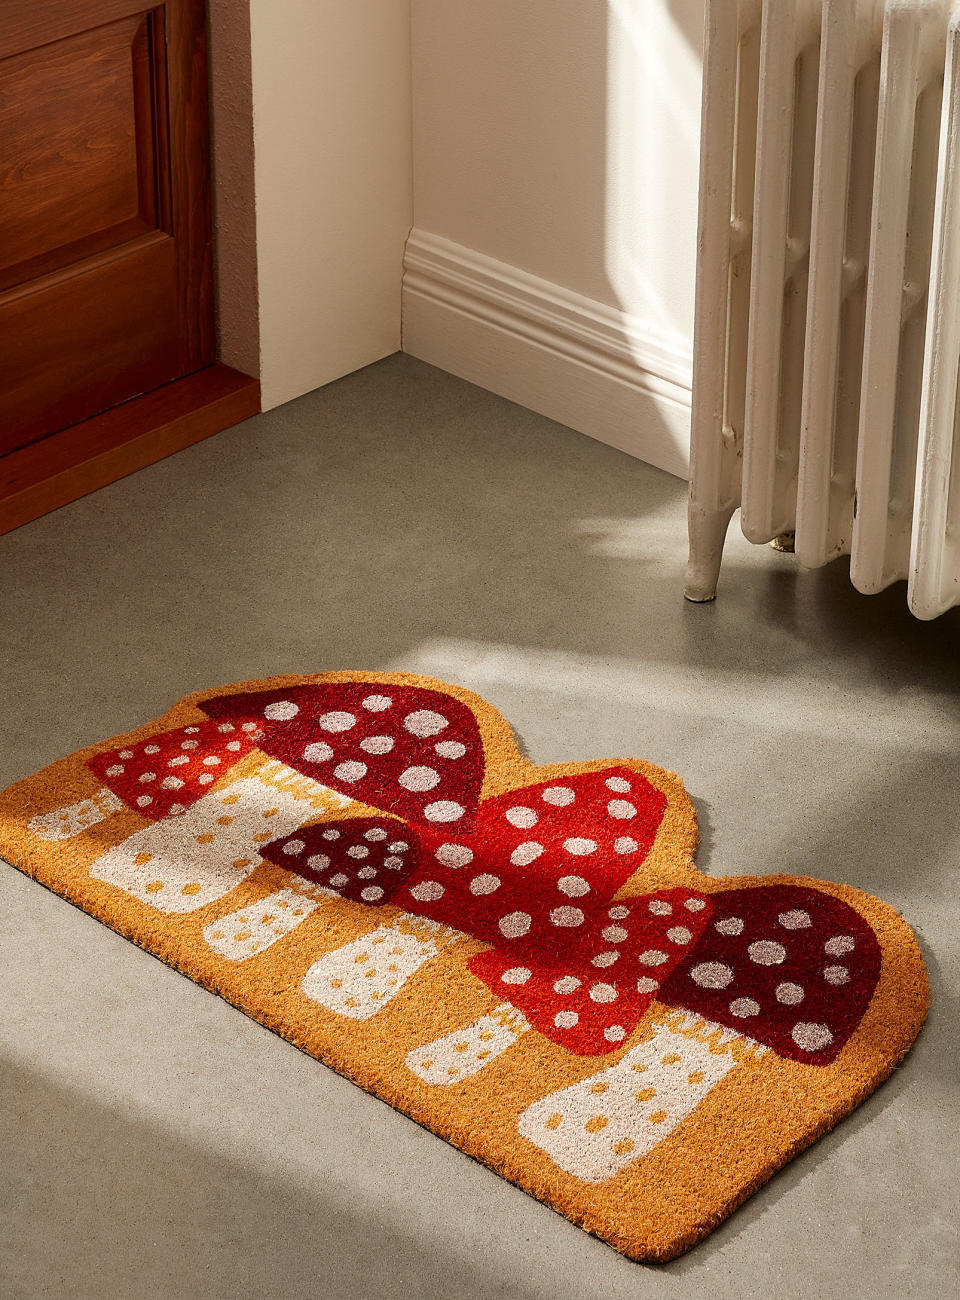 the doormat on a floor beside a door